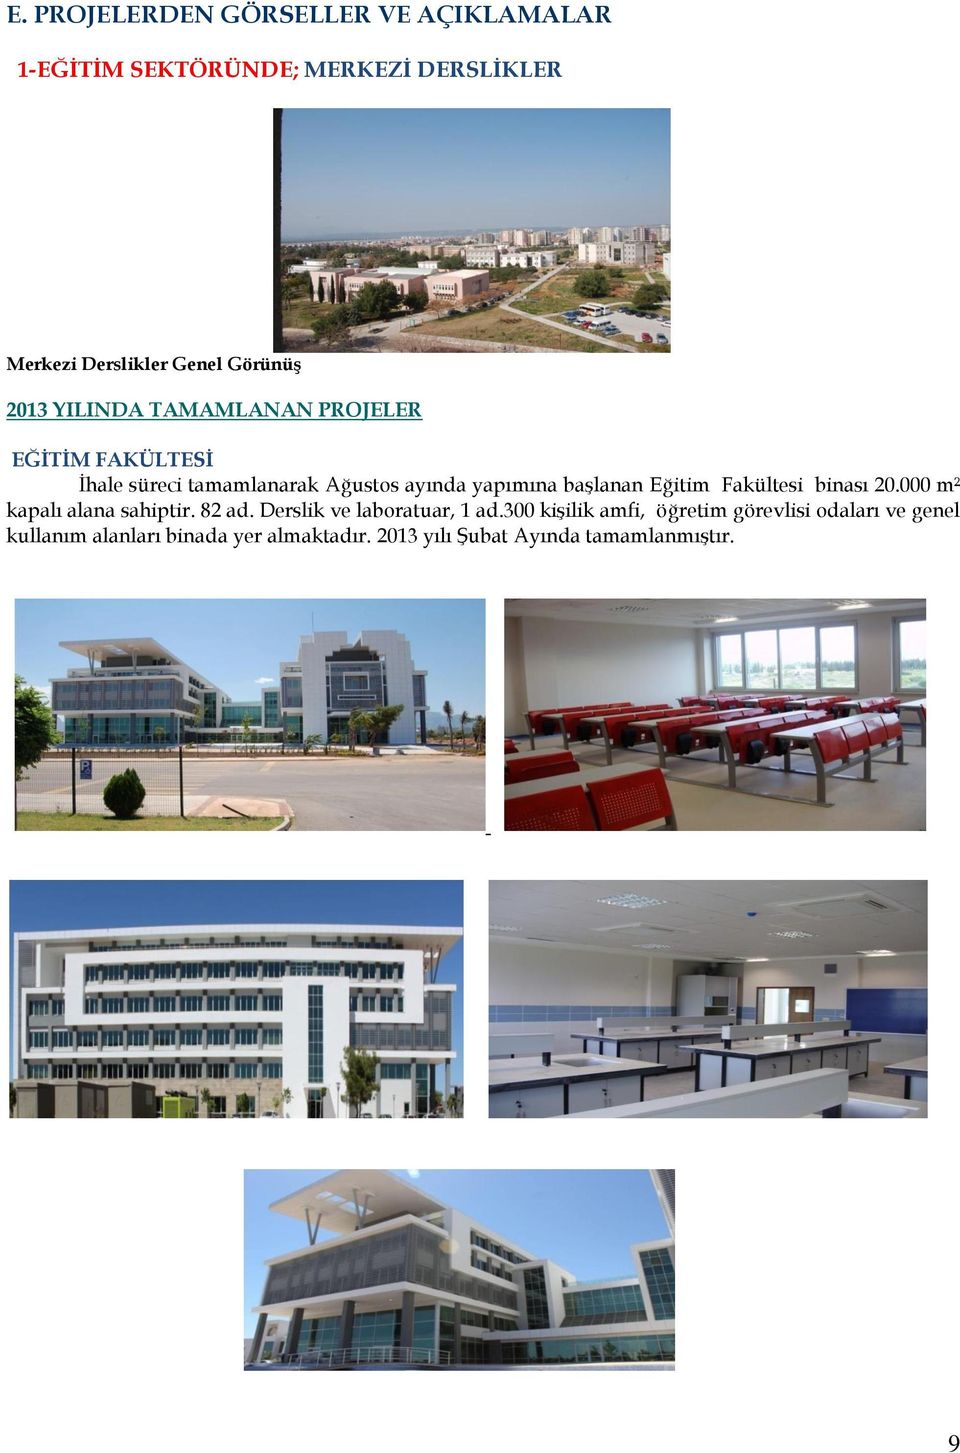 başlanan Eğitim Fakültesi binası 20.000 m² kapalı alana sahiptir. 82 ad. Derslik ve laboratuar, 1 ad.